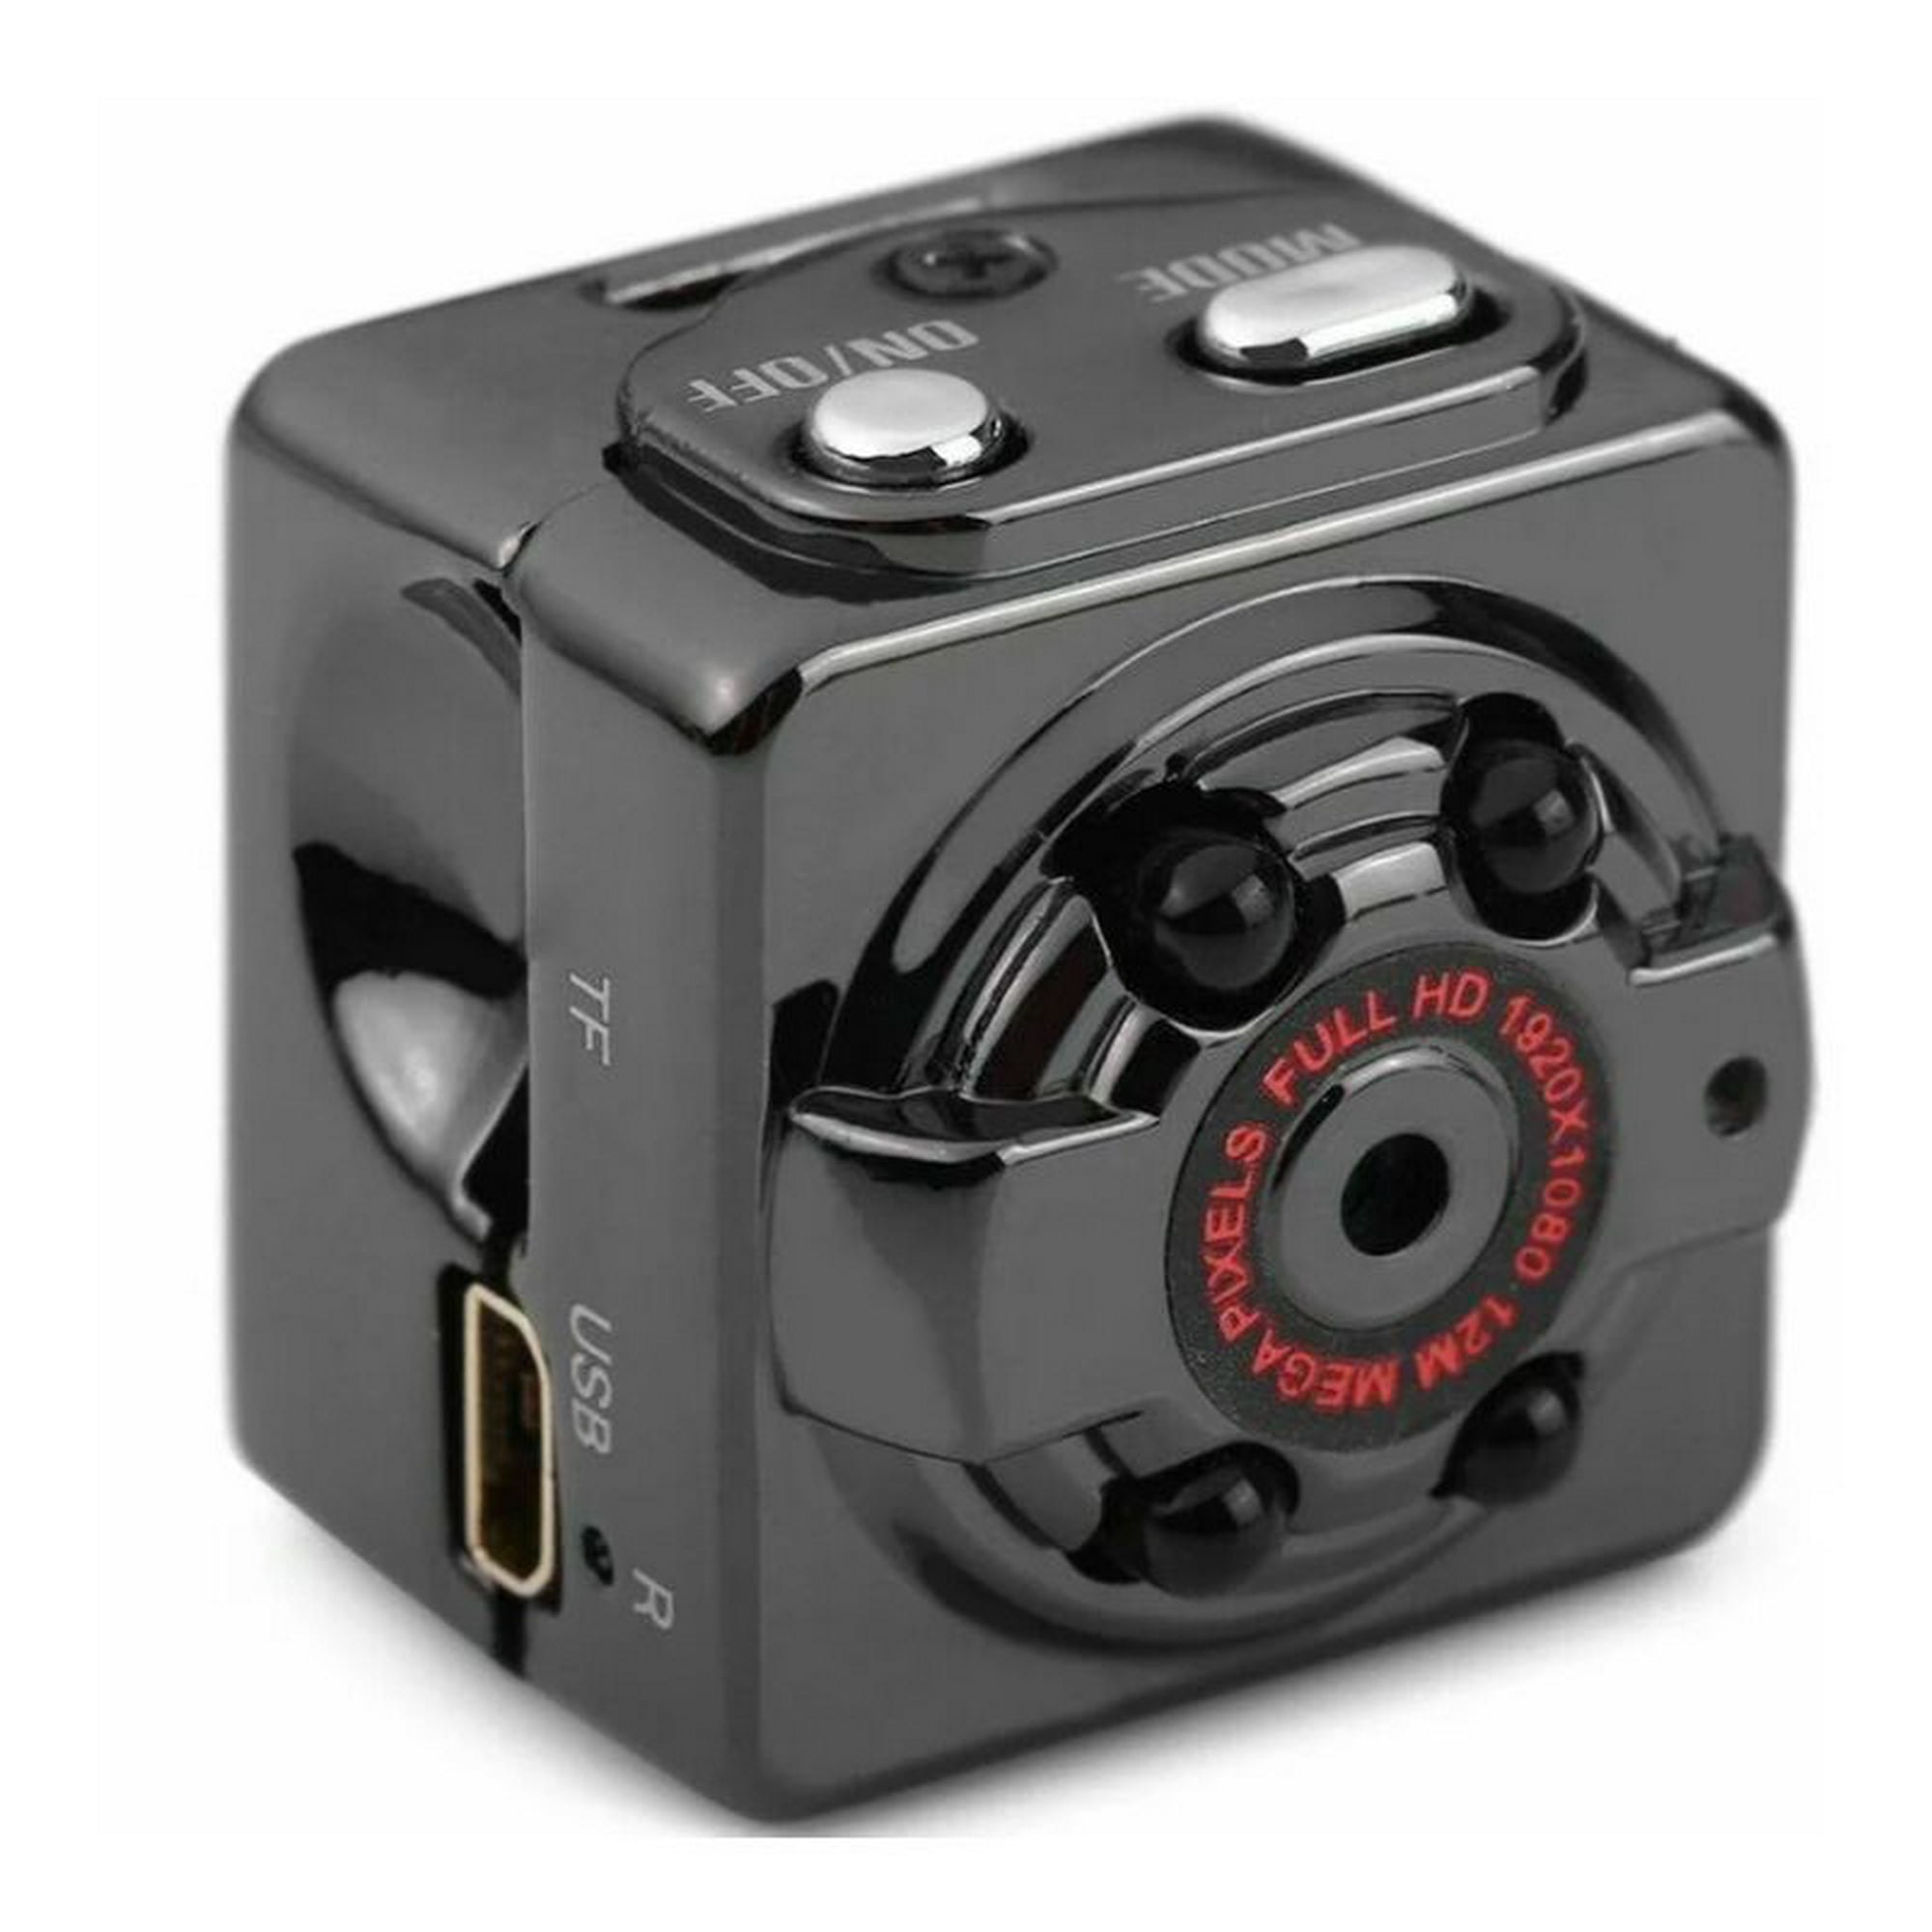 Camara Espia Mini Fullhd Vision Nocturna Max 32gb Y Detector De